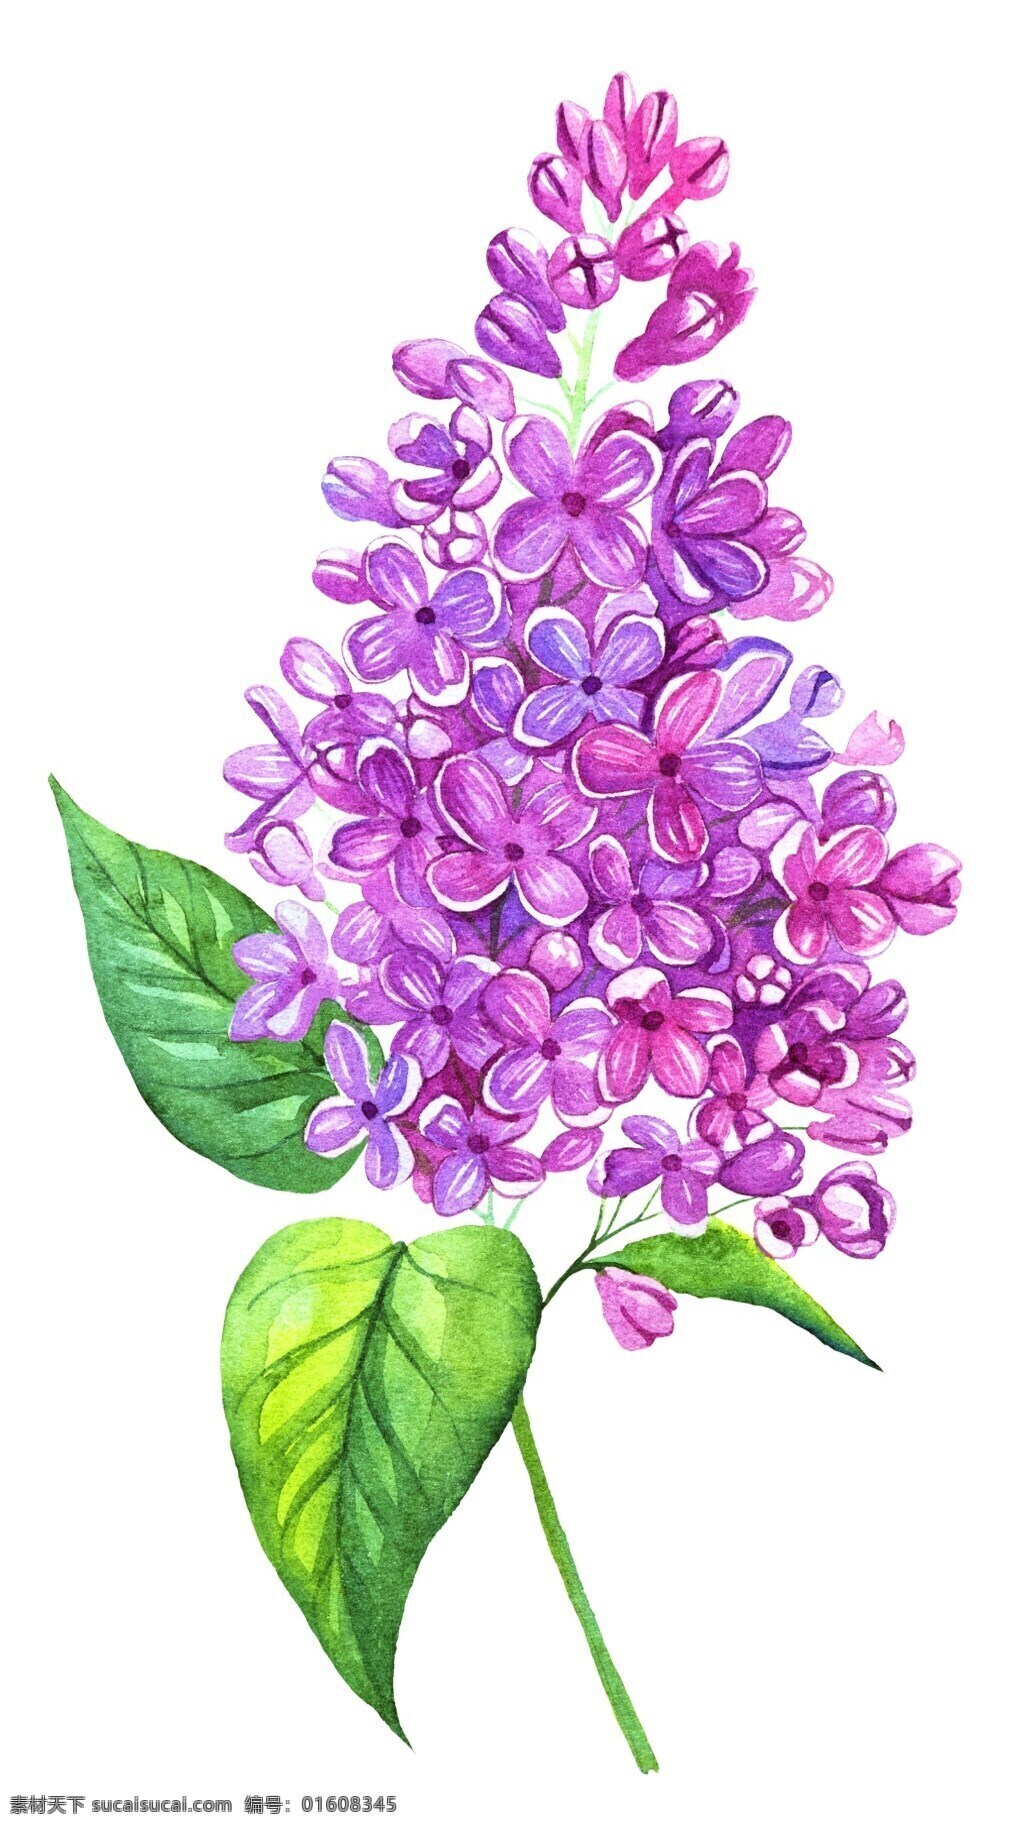 魅力 紫花 矢量 花束 唯美 矢量素材 设计素材 平面素材